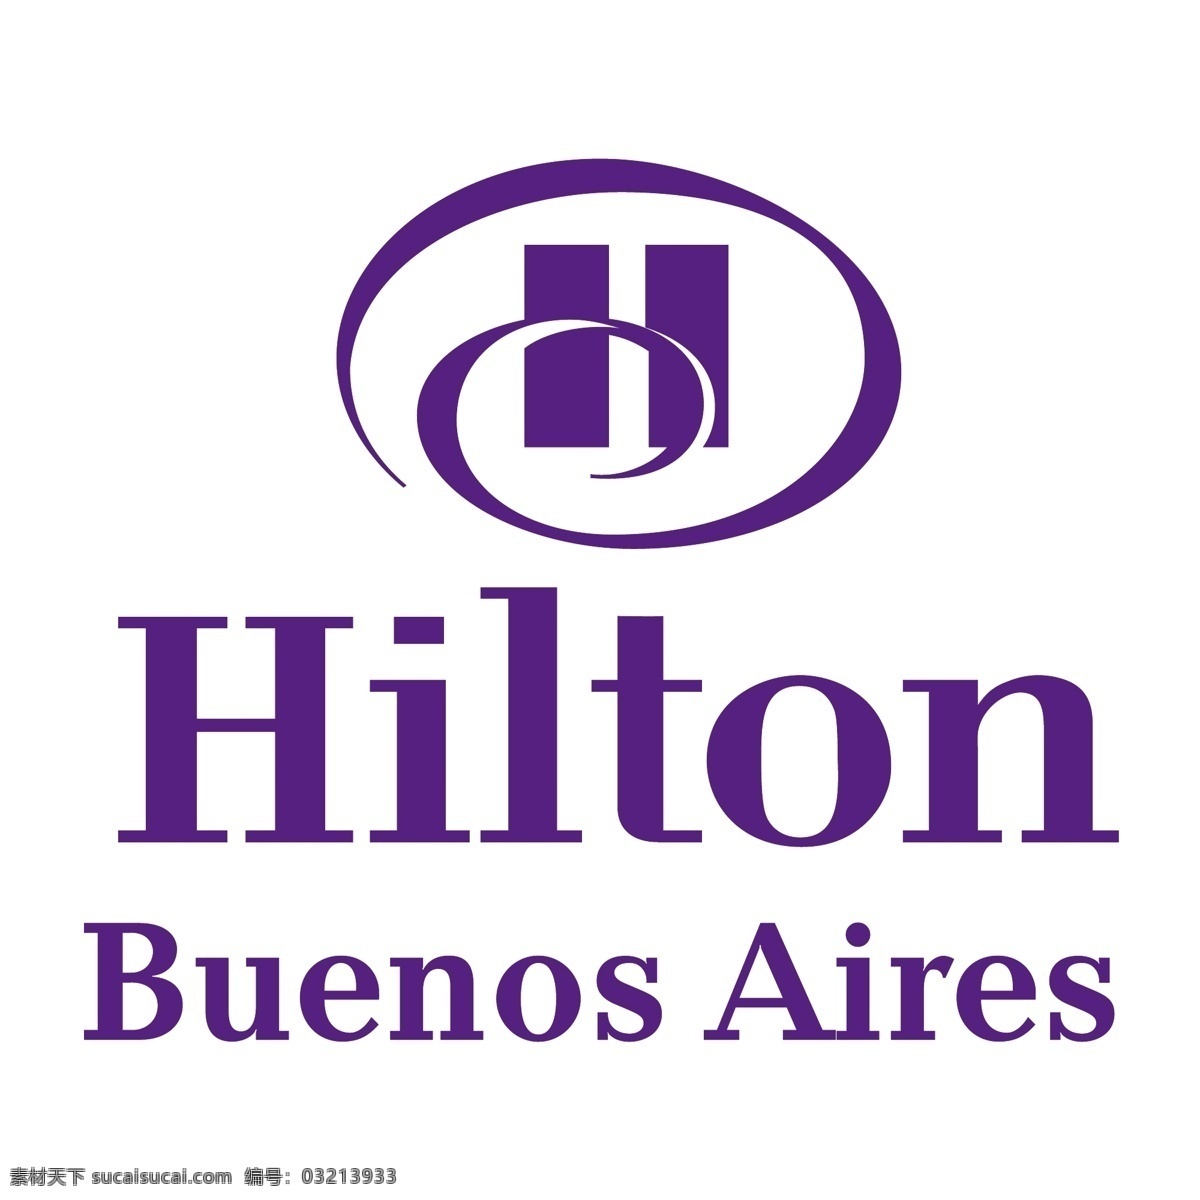 布宜诺斯艾利斯 希尔顿酒店 布 艾利斯 矢量图 其他矢量图